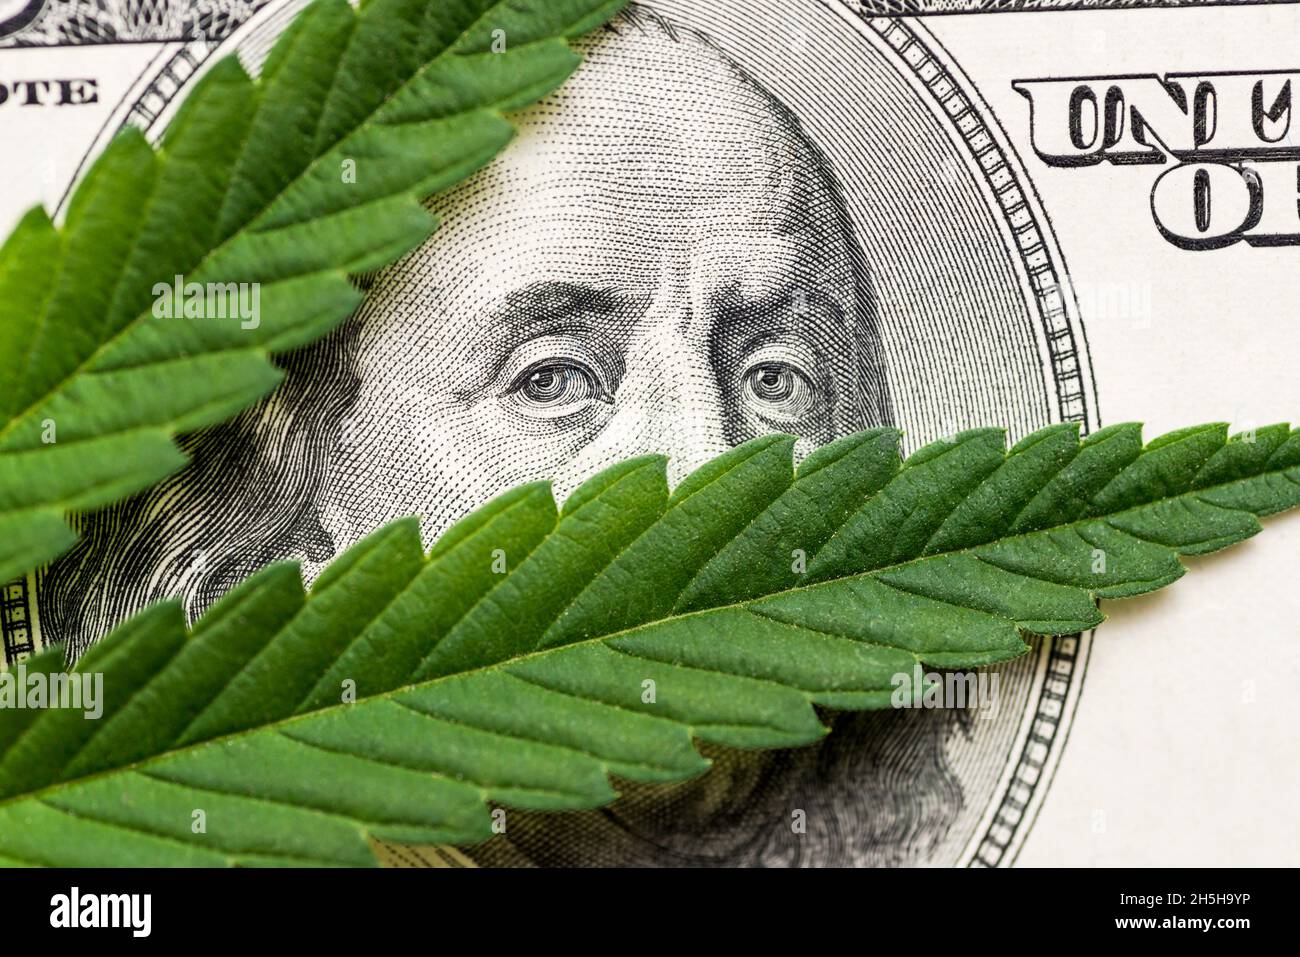 Feuilles de marijuana dans les centaines de dollars. Une feuille de marijuana pour l'argent, les dollars et le cannabis, un cadre juridique et d'affaires sur le marché noir. Banque D'Images